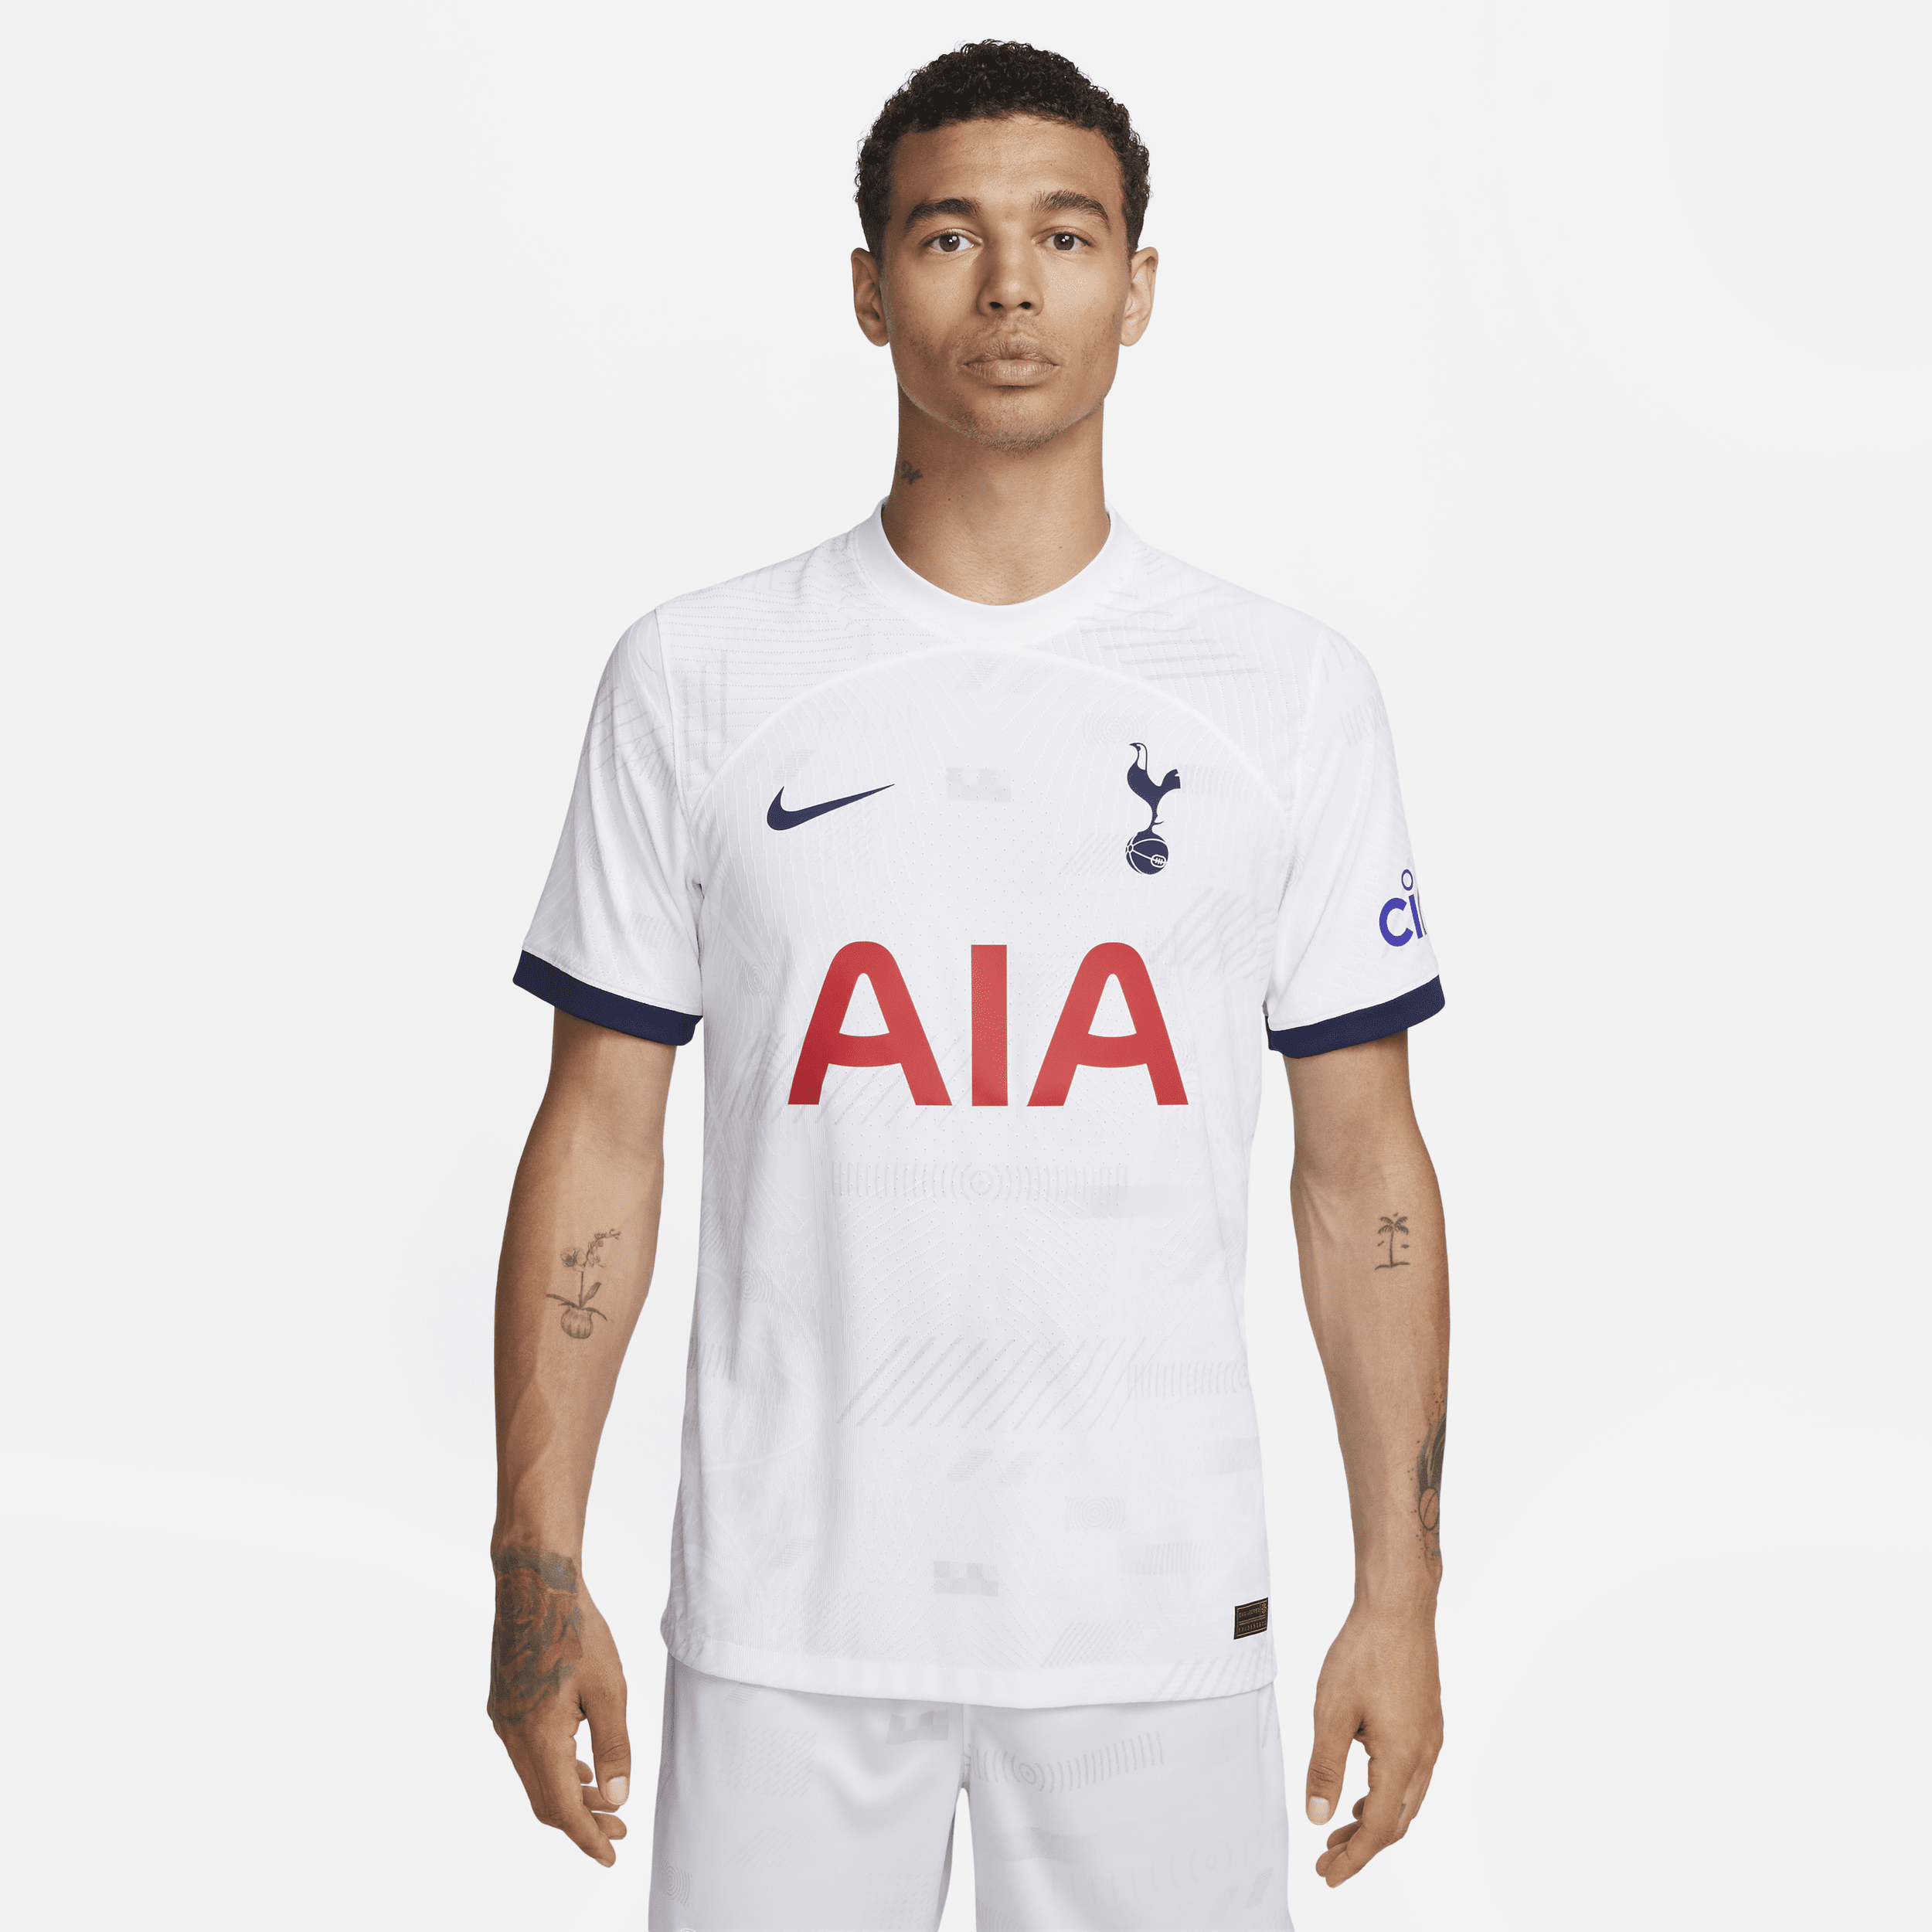 Tottenham Hotspur 2018 Jersey,Tottenham Hotspur 2019 Kit,S-XL 17/18  tracksuit Tottenham Hotspur